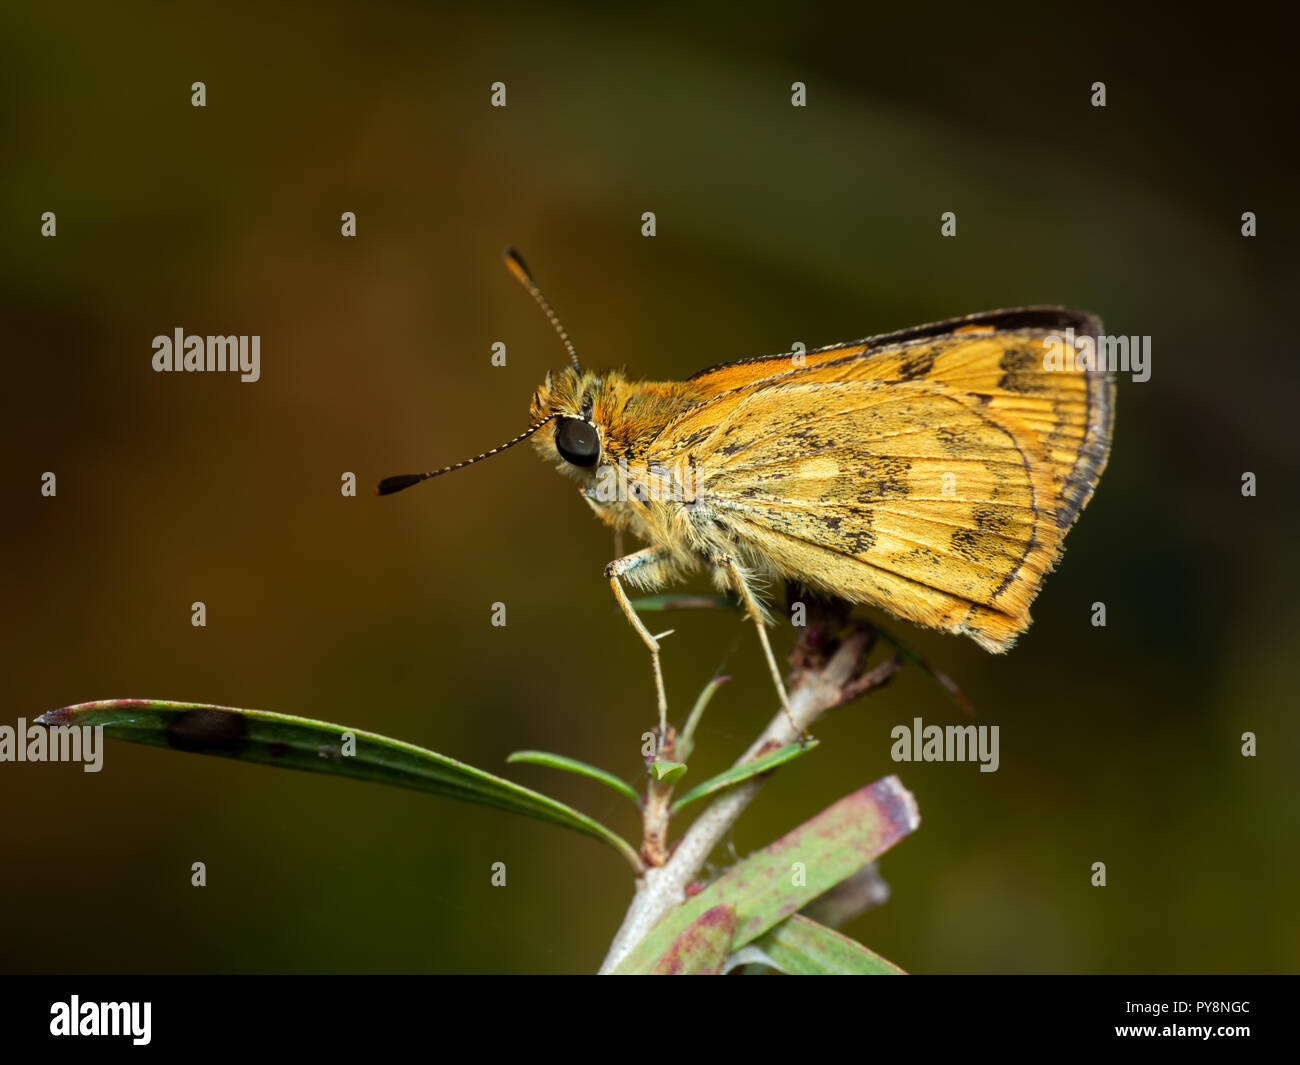 Macro Photography of Yellow Moth on Twig of Plant Stock Photo